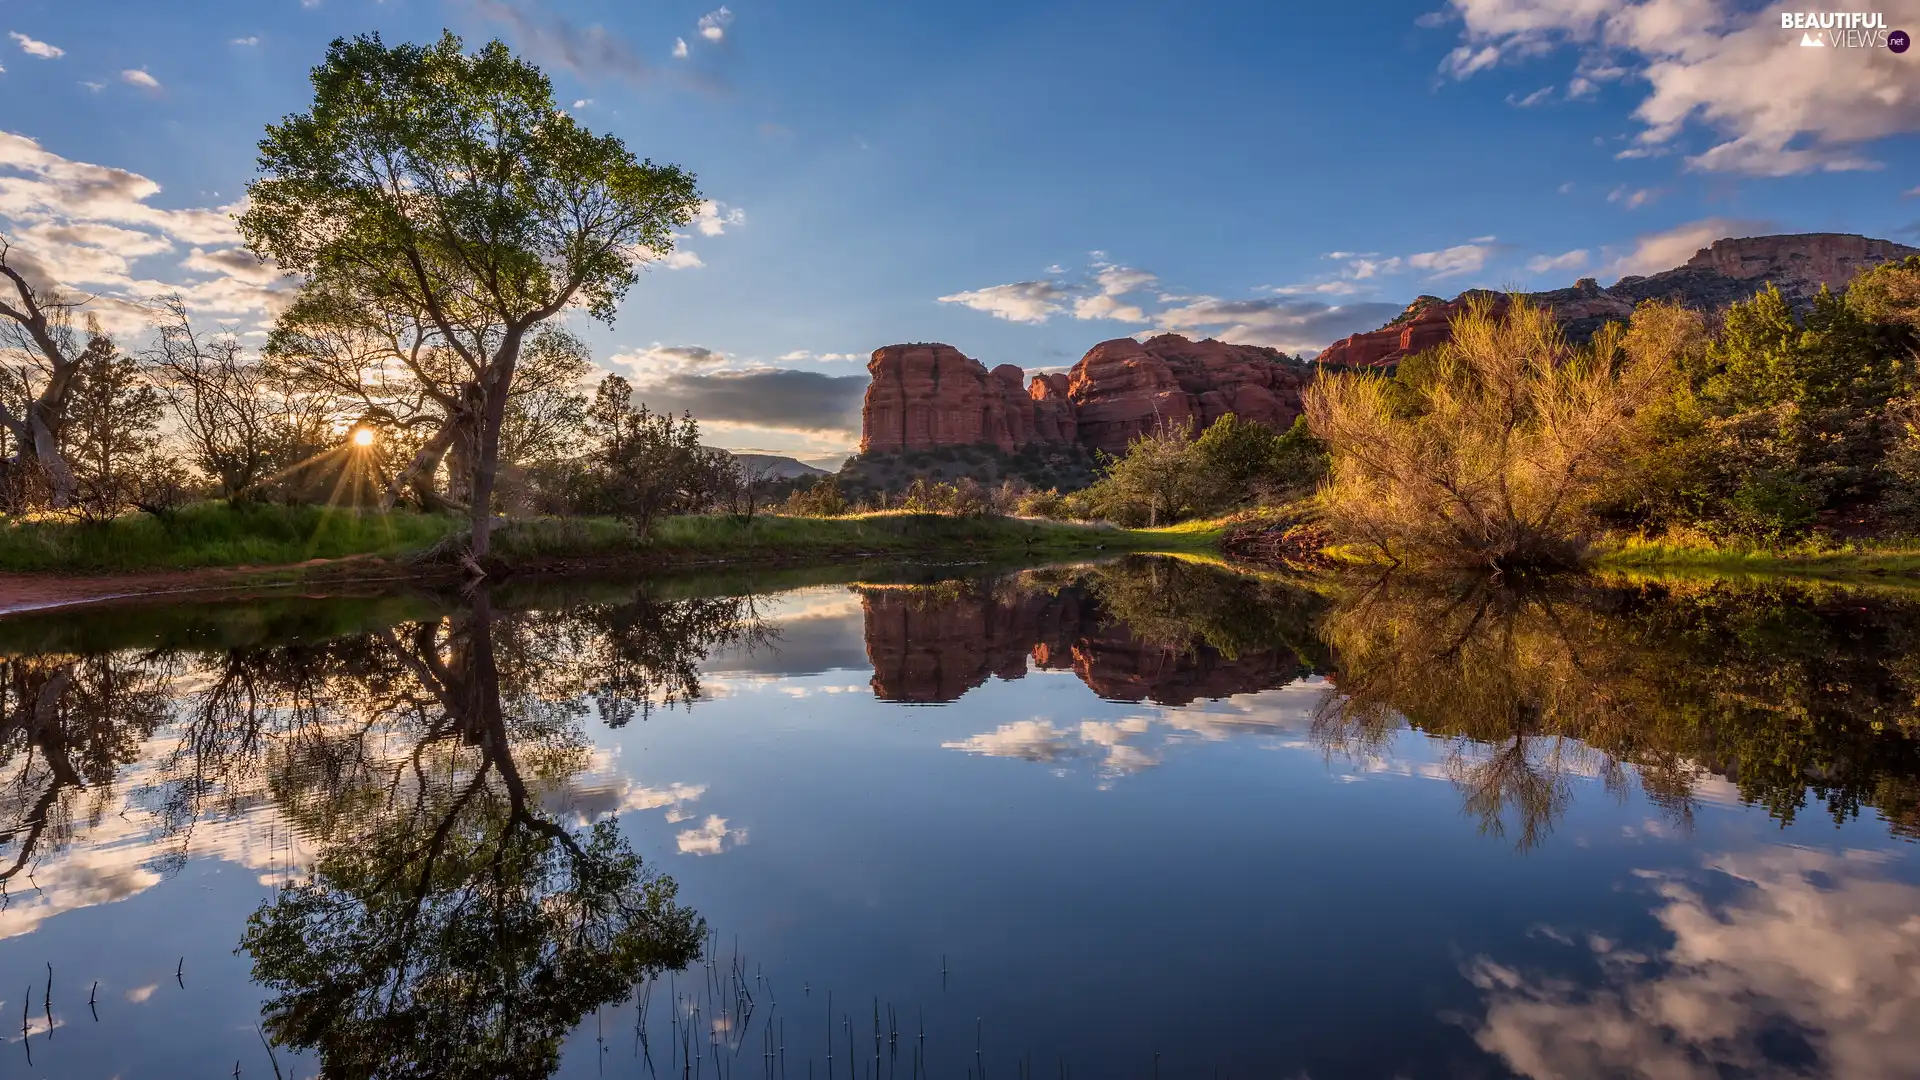 trees, lake, viewes, Bush, Arizona, The United States, reflection, Sedona, rocks